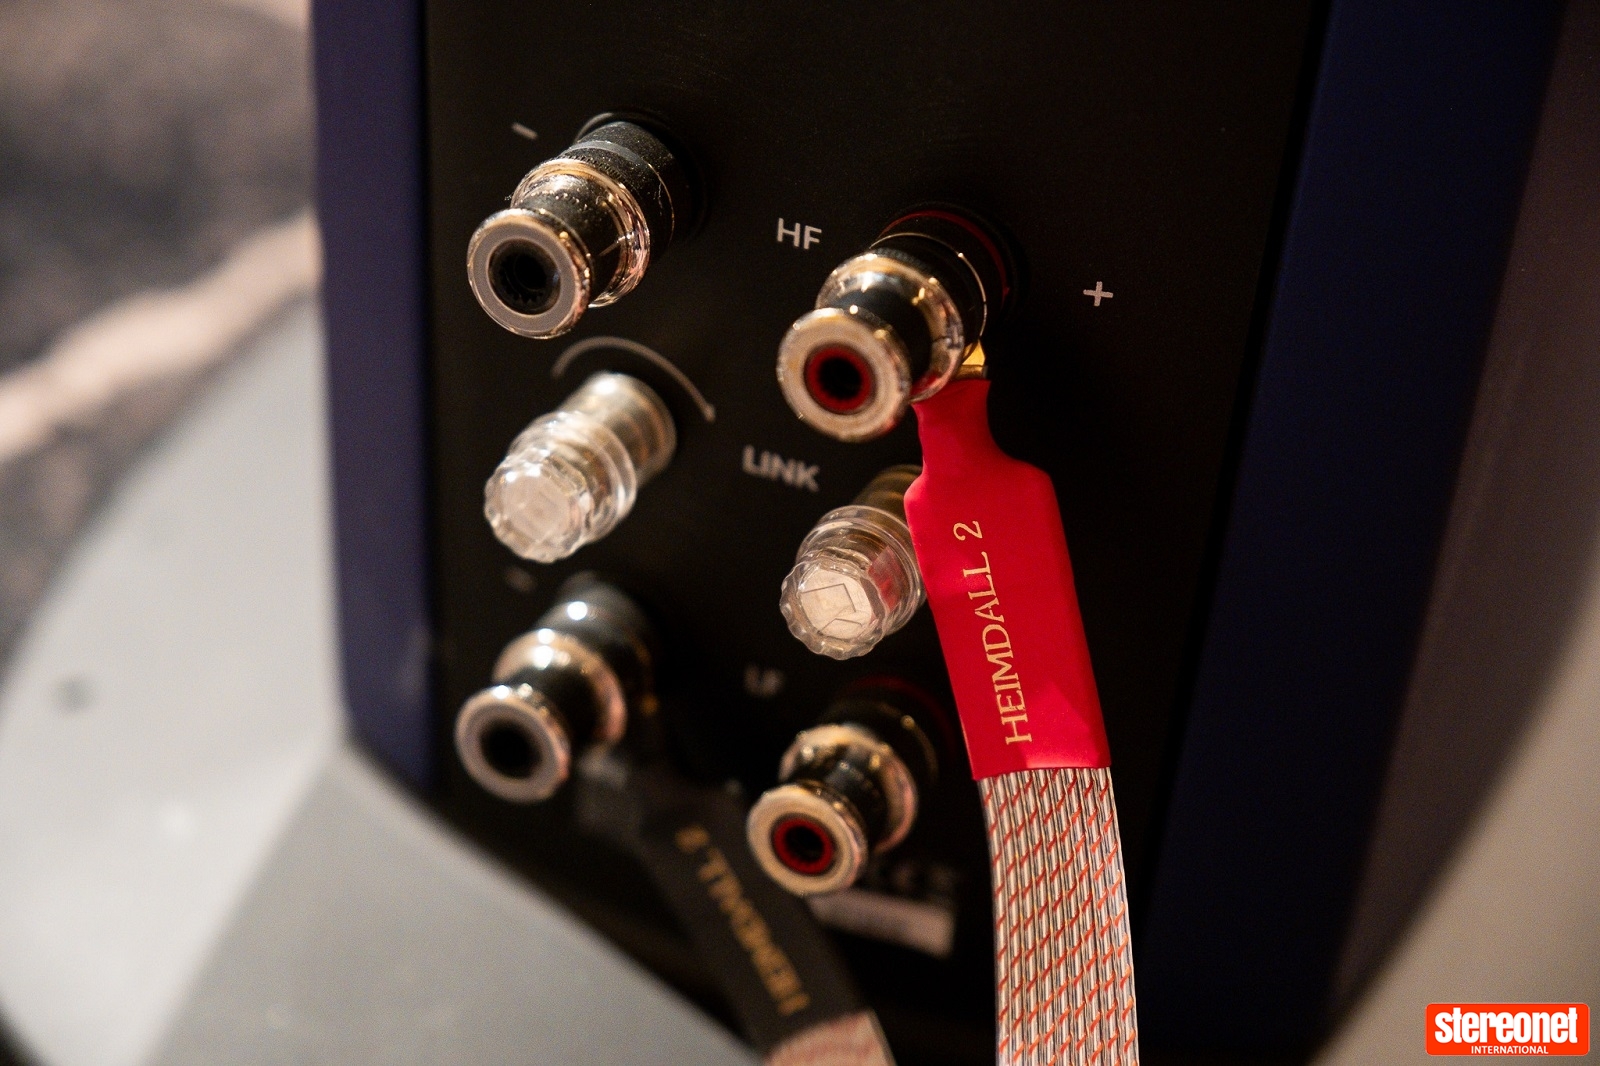 Акустический кабель Nordost Heimdall 2 обеспечивает впечатляющее звучание. Обзор StereoNet.com